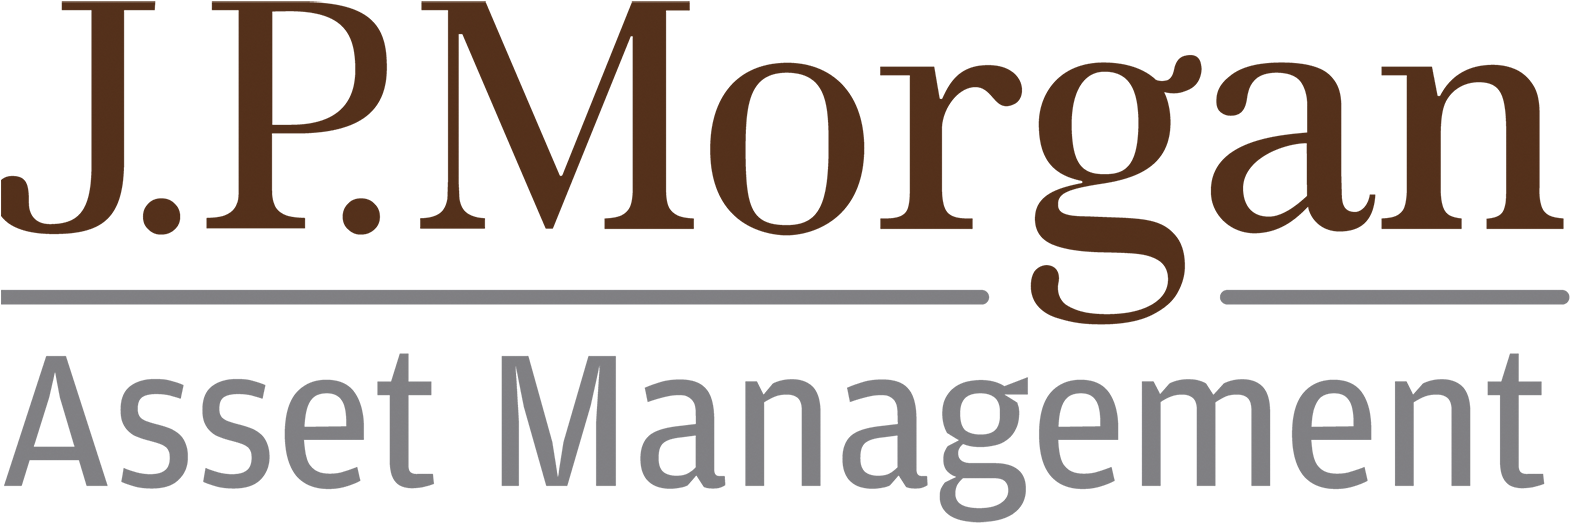 Jp Morgan Asset Management (654x217), Png Download